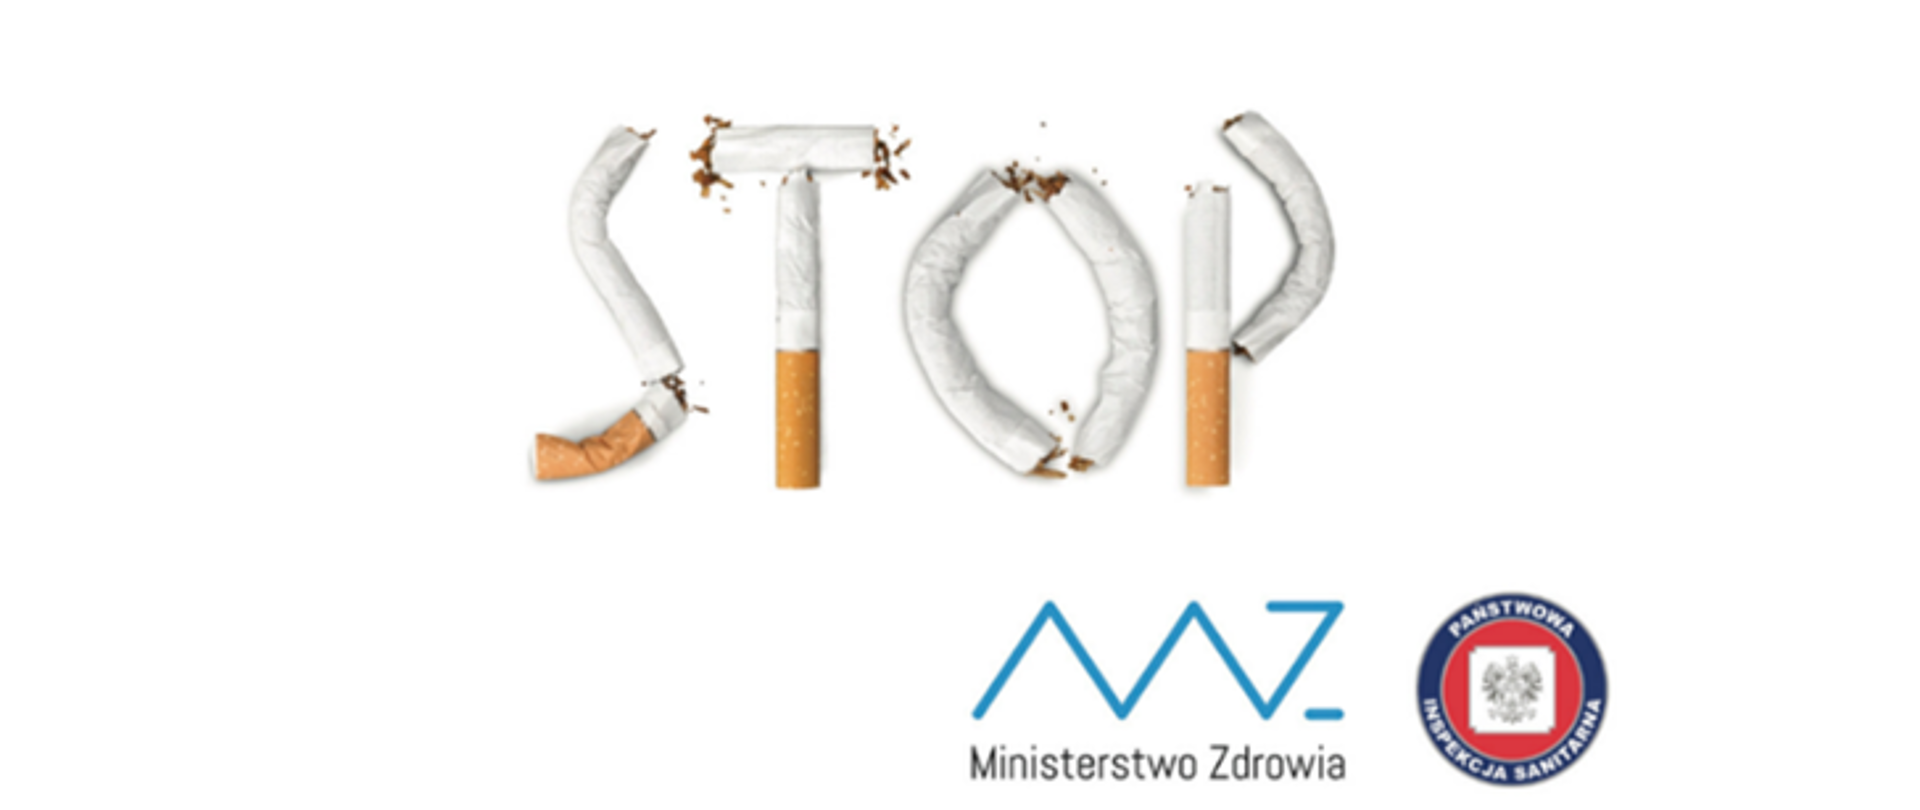 zdjęcie przedstawiające napis "STOP" wykonany z papierosów; logo Ministerstwa Zdrowia, Logo Państwowej Inspekcji Sanitarnej